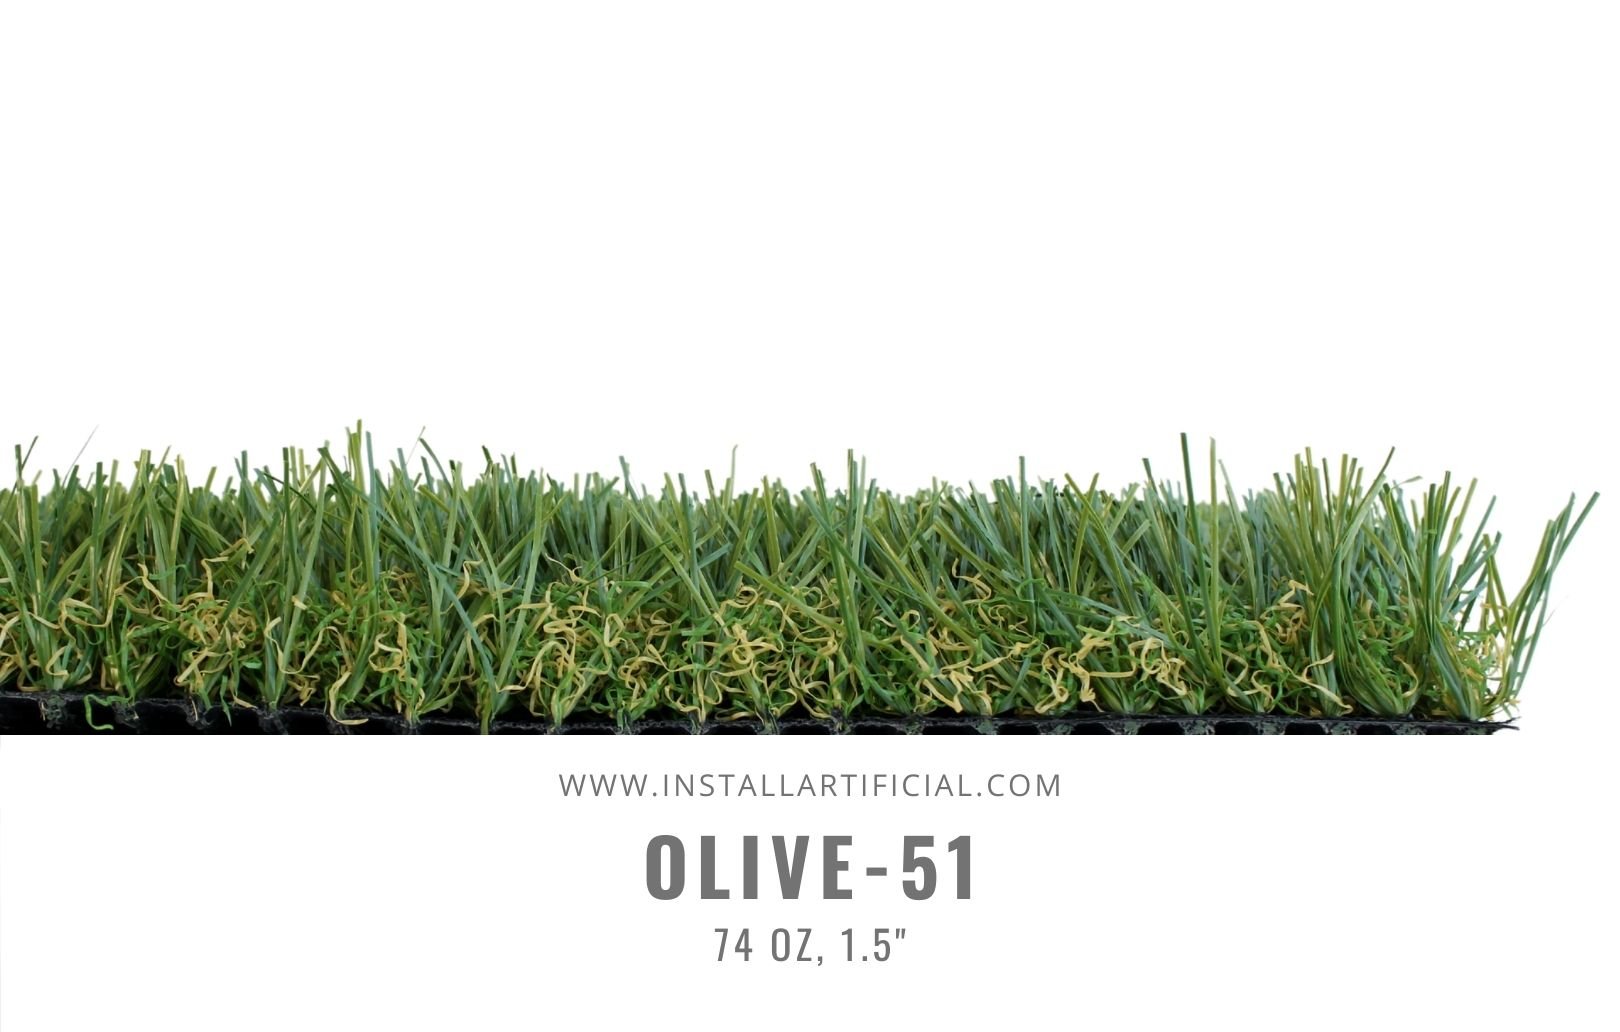 Olive 51, Global Syn Turf, side